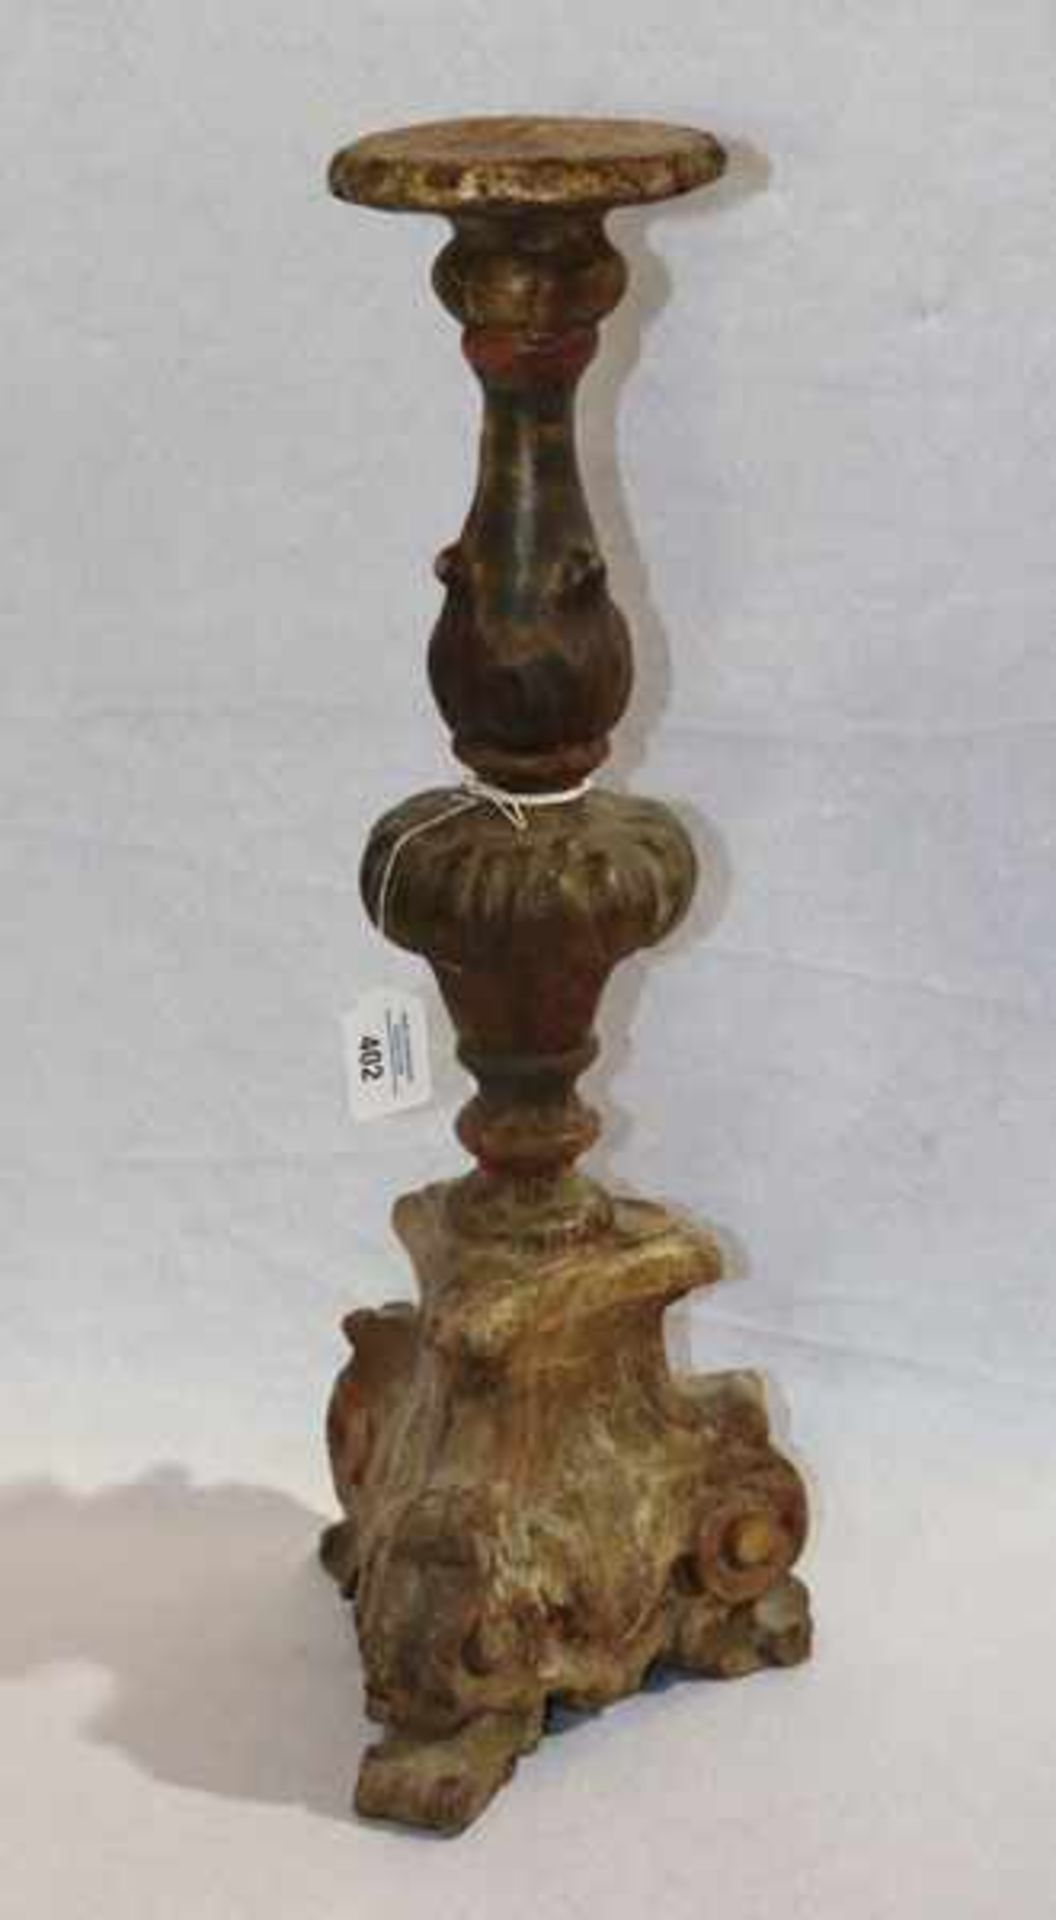 Holz Kerzenleuchter, 19. Jahrhundert, Restfassung, H 60 cm, D 26 cm, Altersspuren